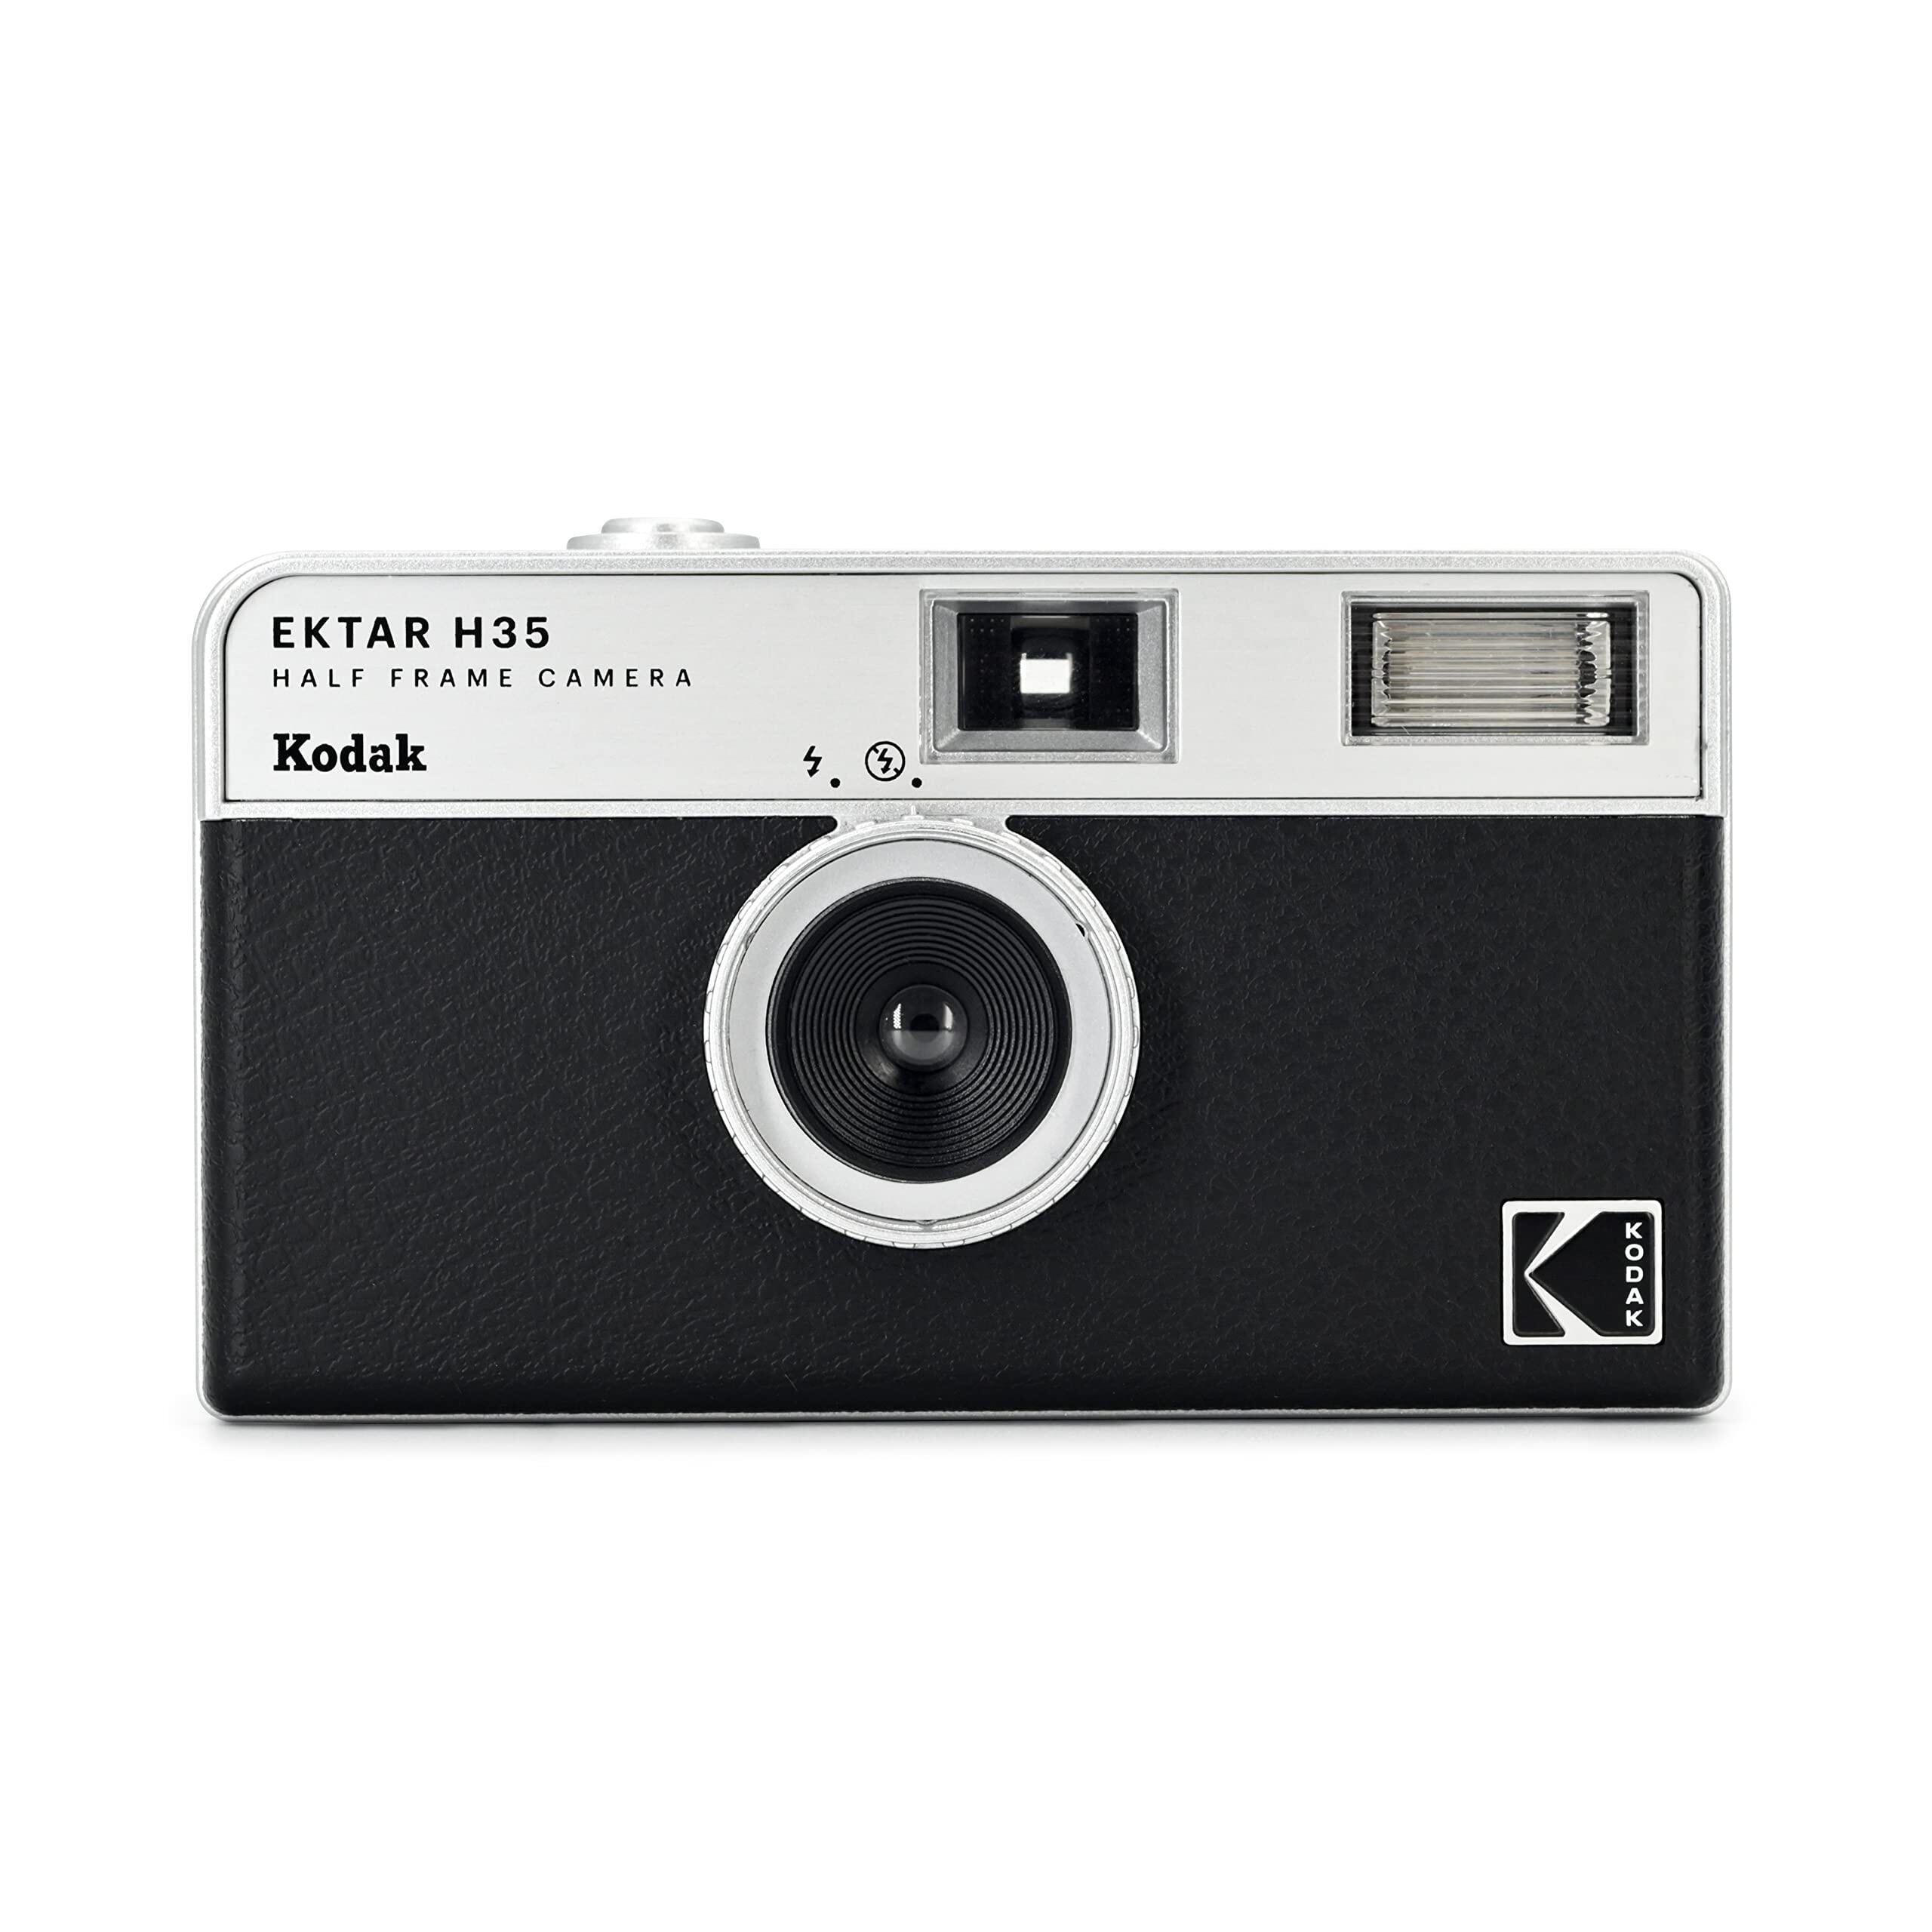 KODAK EKTAR H35 Half Frame 35mm Film Camera